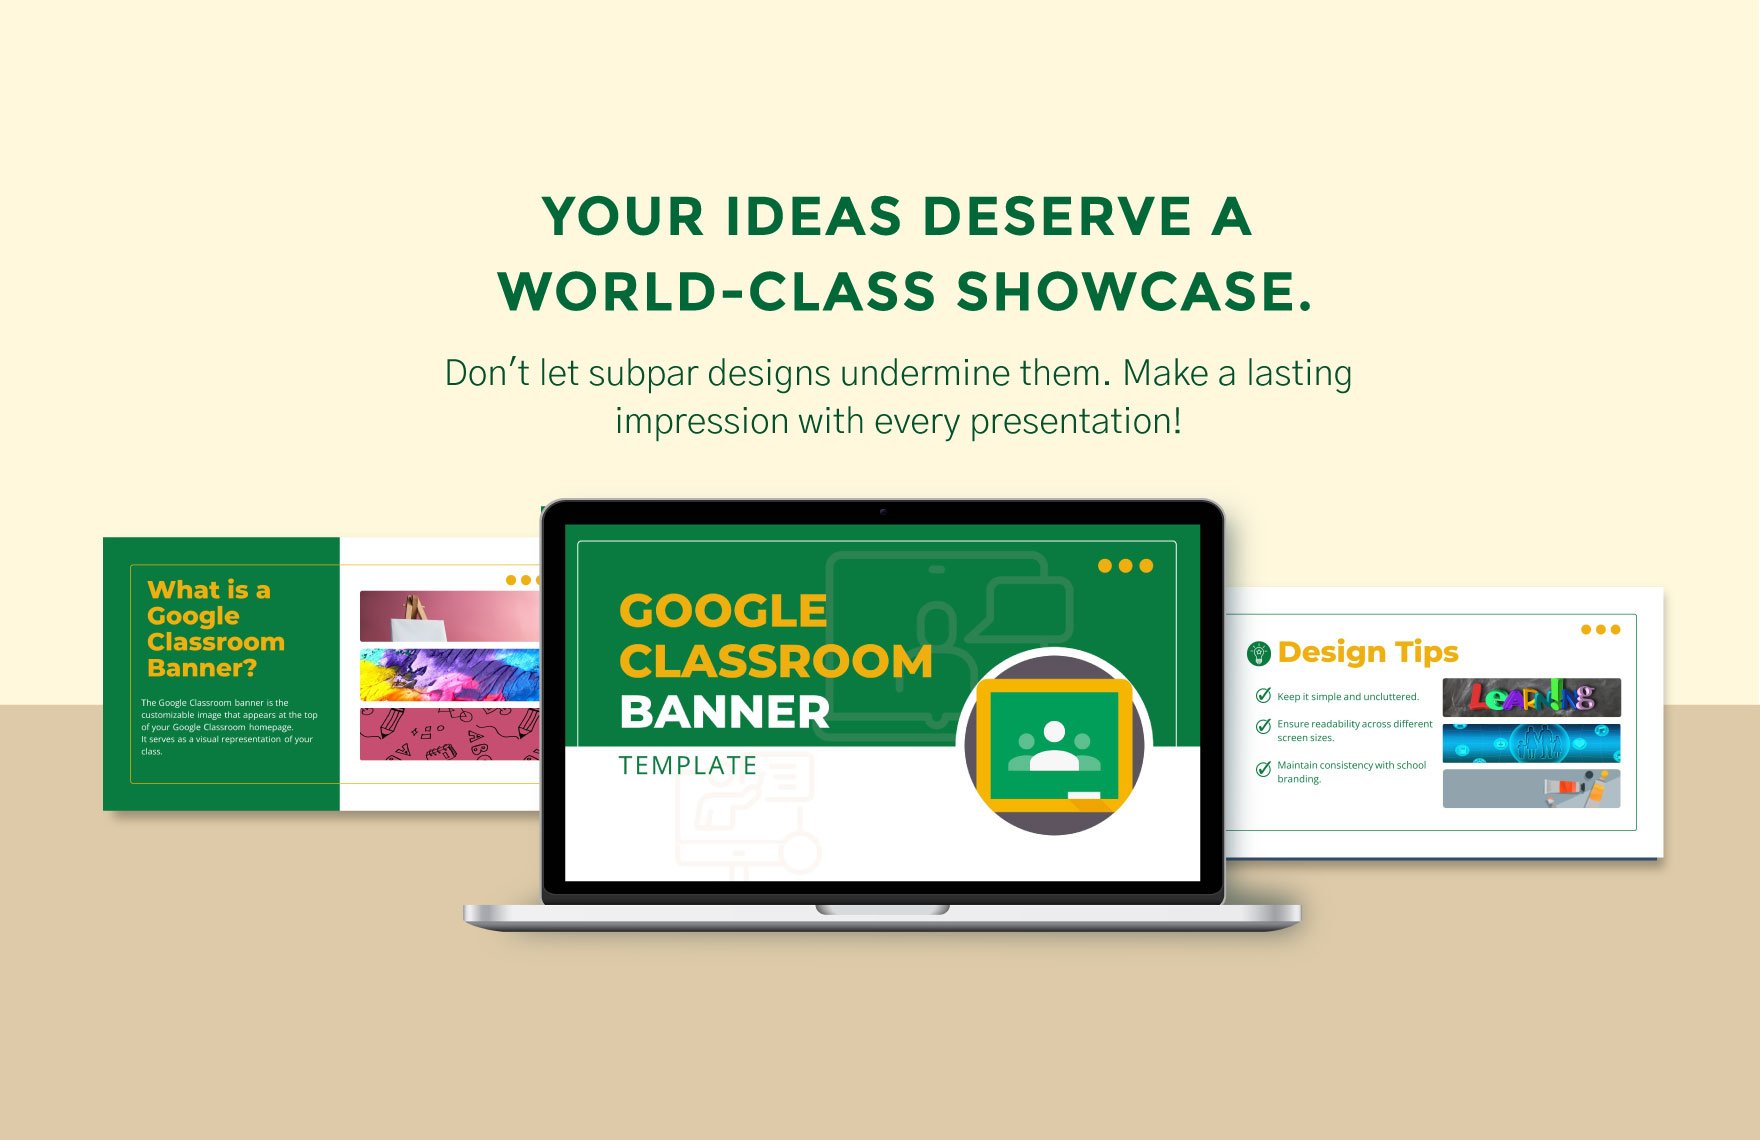 Google classroom Banner Template